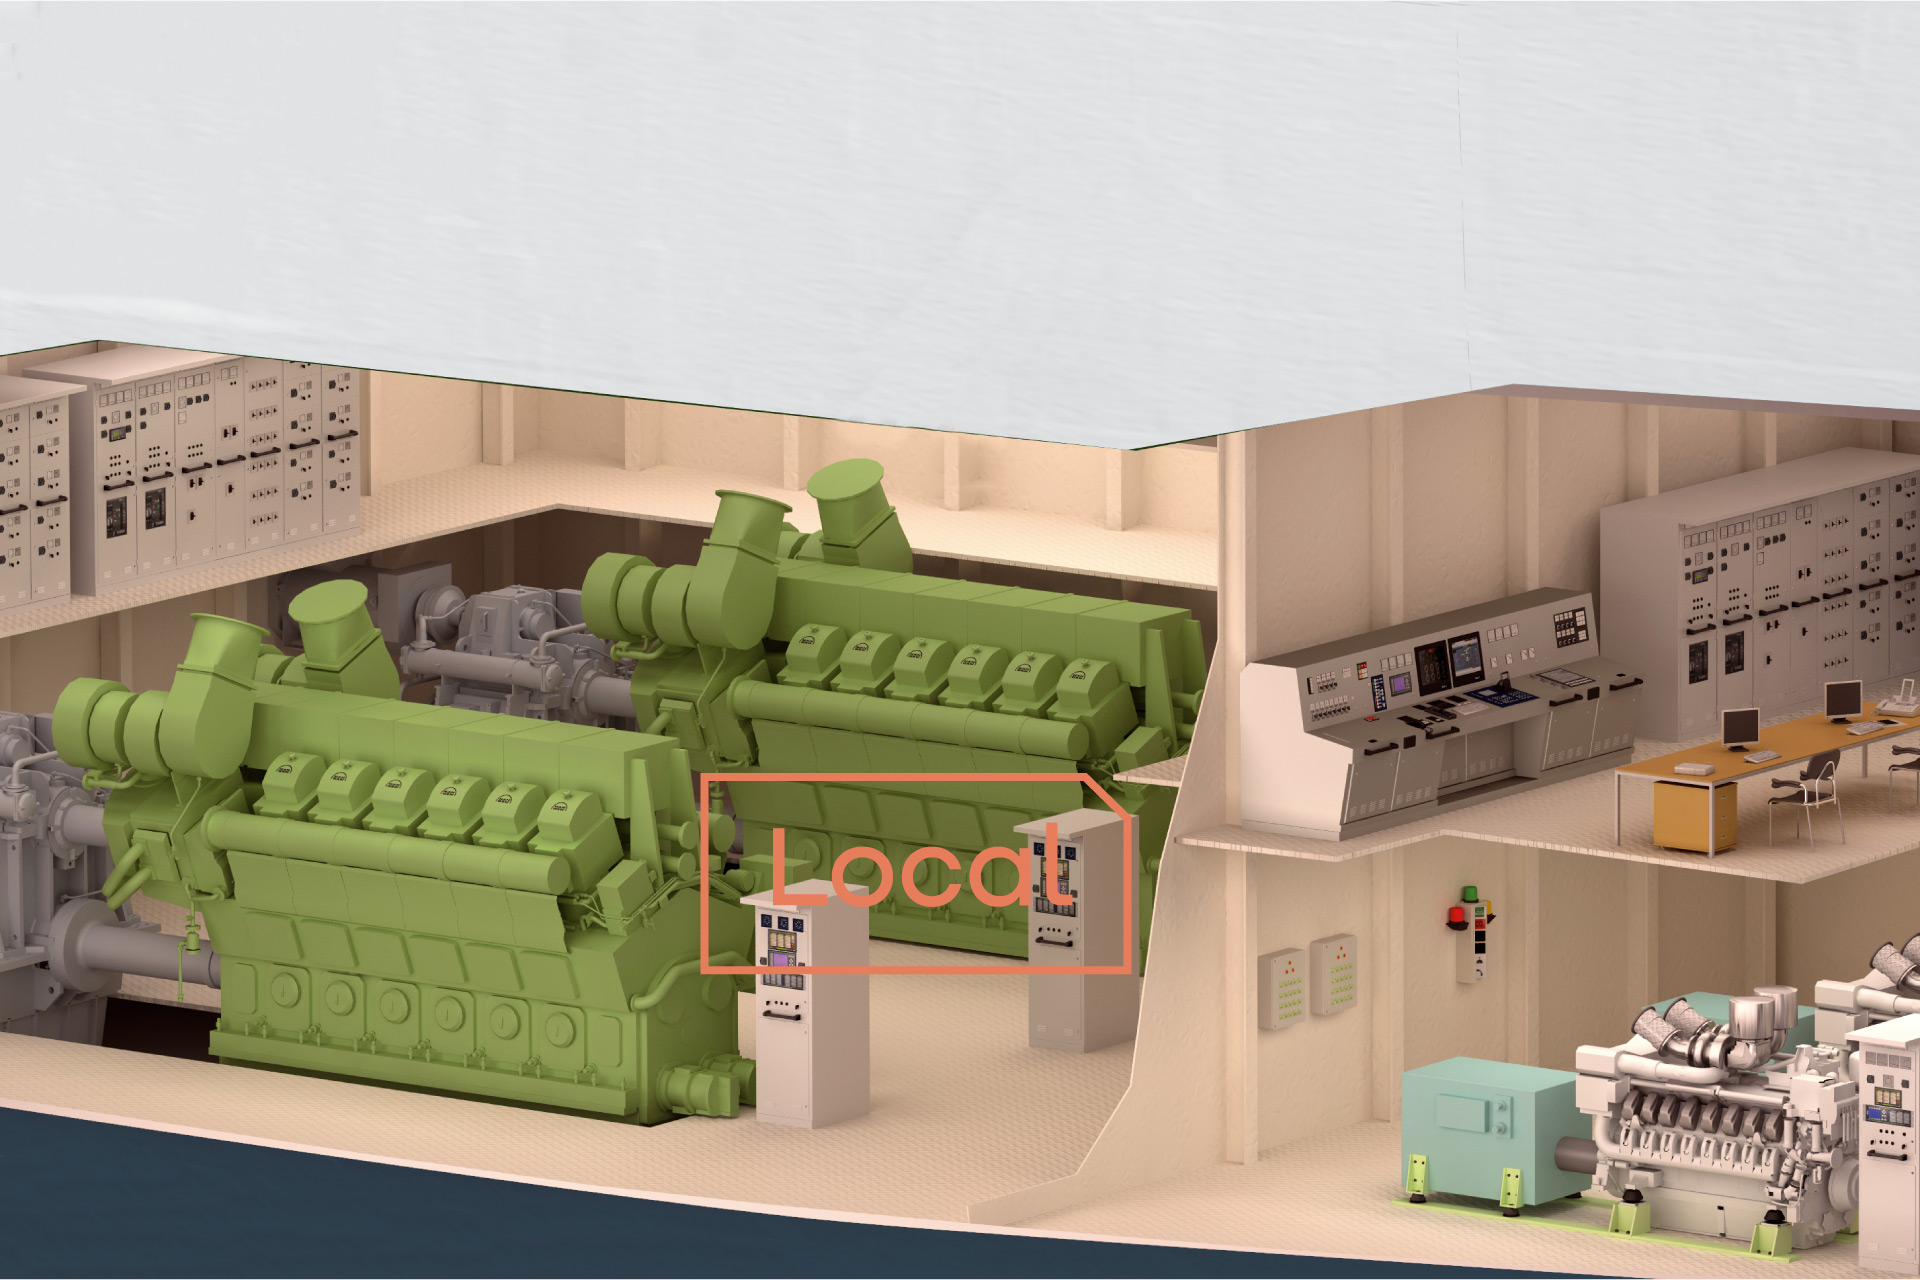 Das Bild zeigt ein 3D Modell eines Querschnittes eines Maschinenraums und Maschinenkontrollraums mit dem Wort "Lokal" darauf.